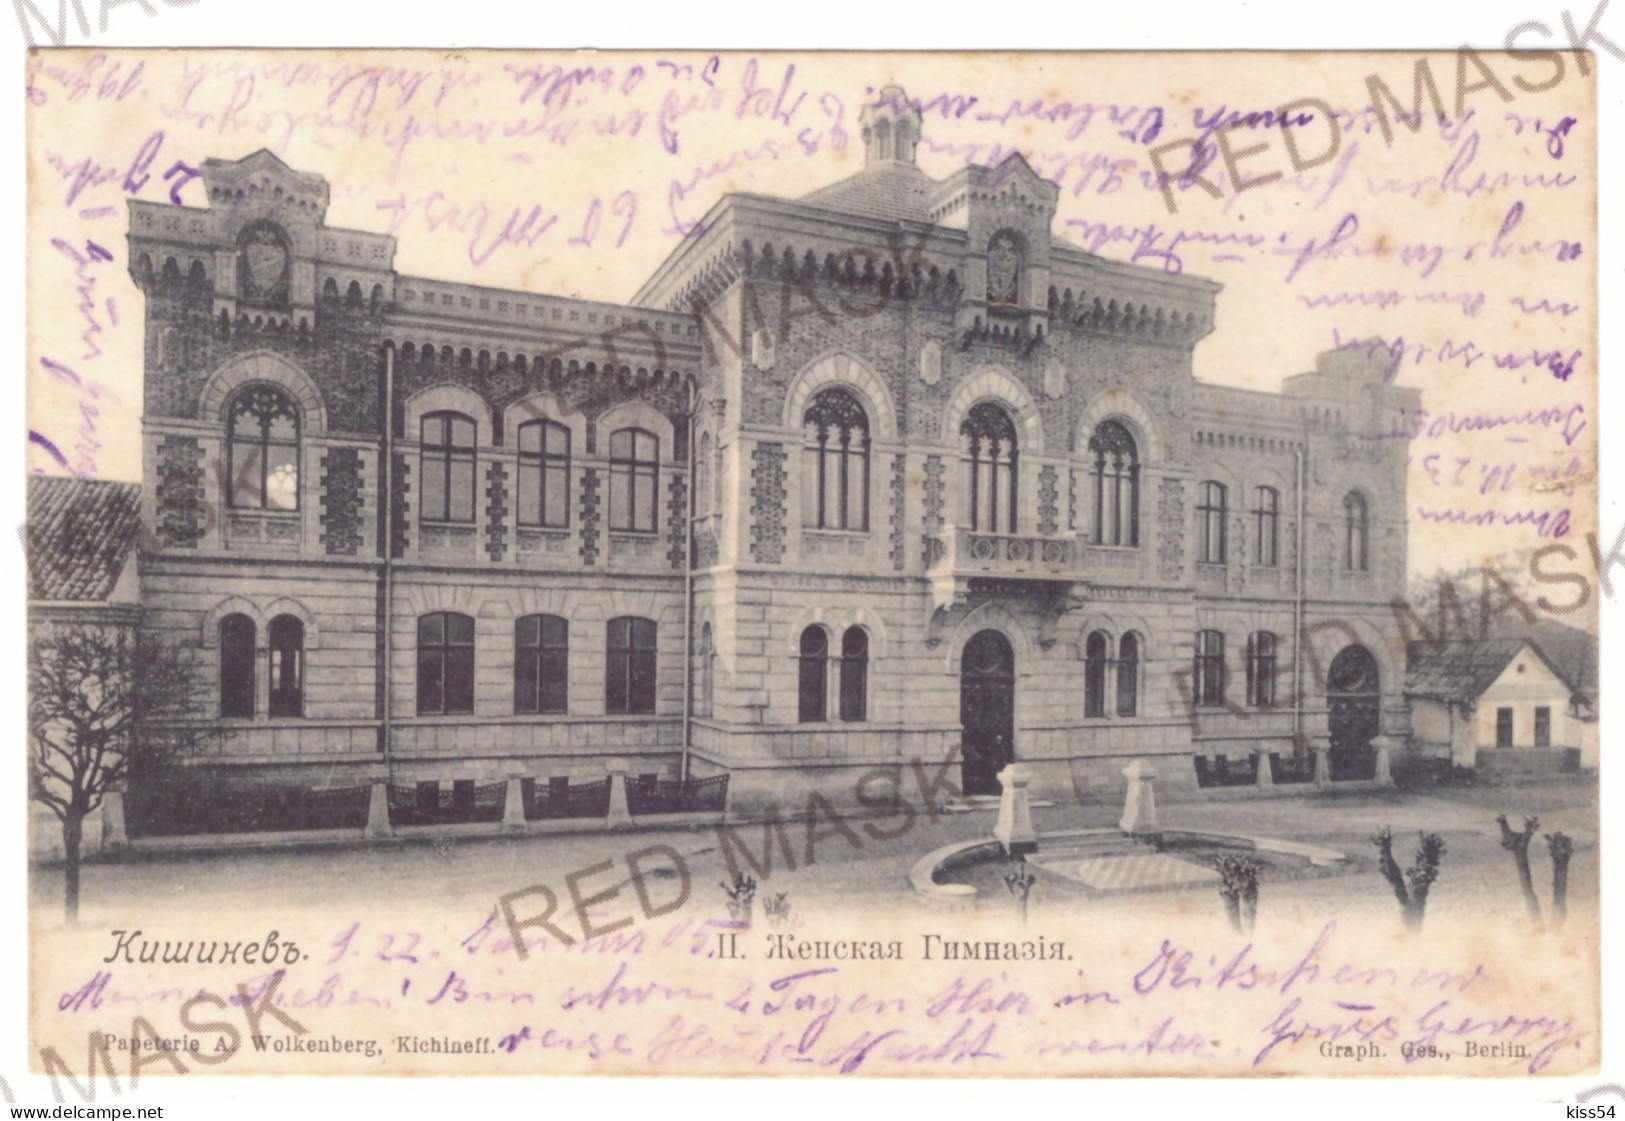 MOL 1 - 20109 CHISINAU, Moldova - Old Postcard - Used - 1905 - Moldawien (Moldova)